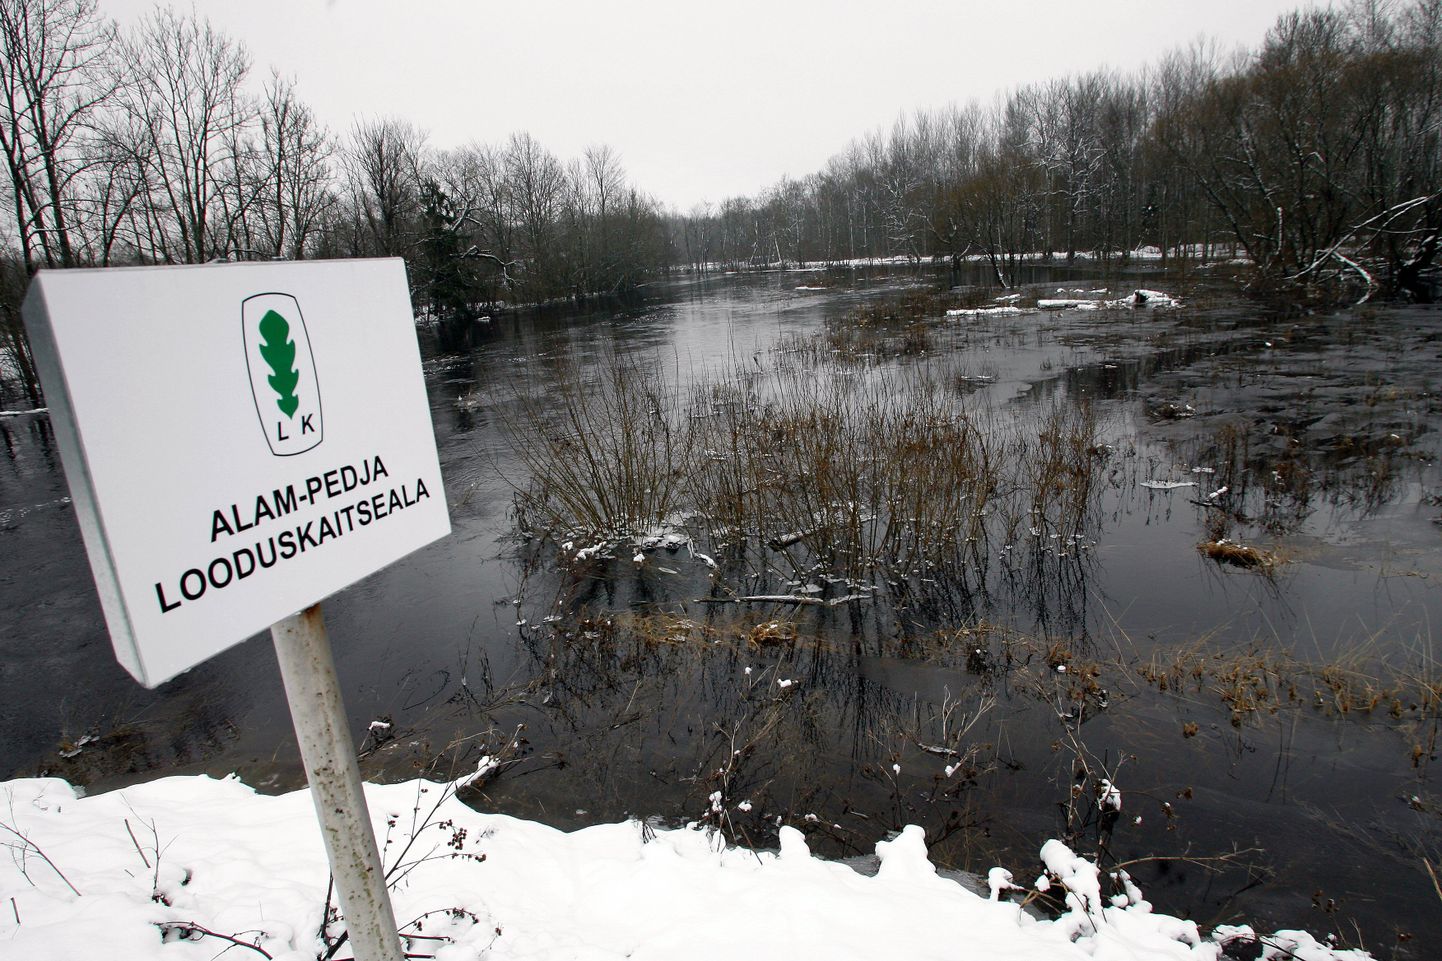 Üks osaliselt Viljandimaale jääv looduskaitseala on Alam-Pedjal.